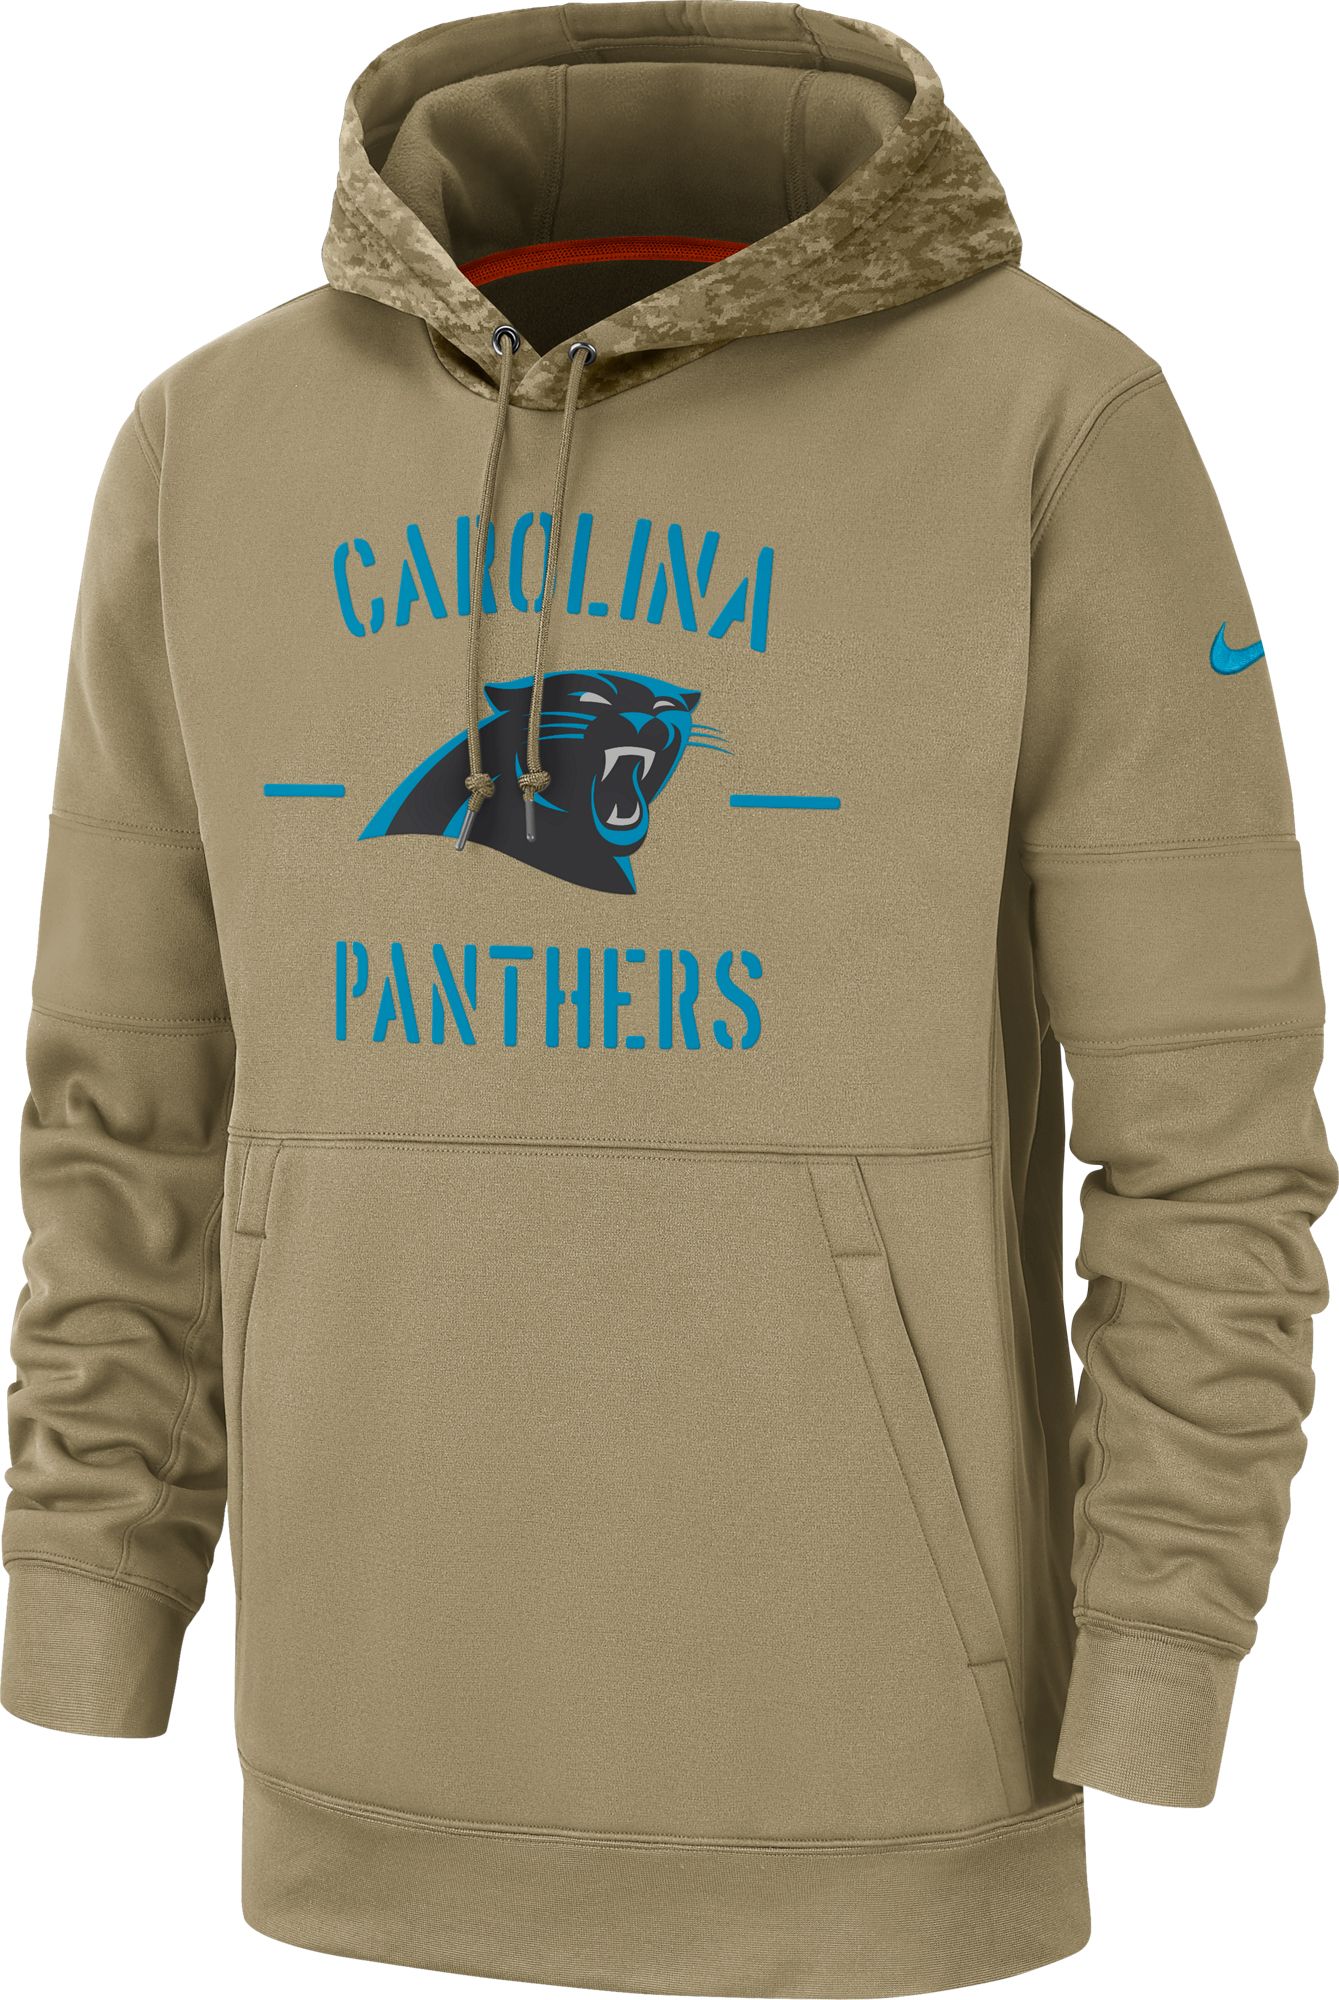 carolina panthers nike hoodie